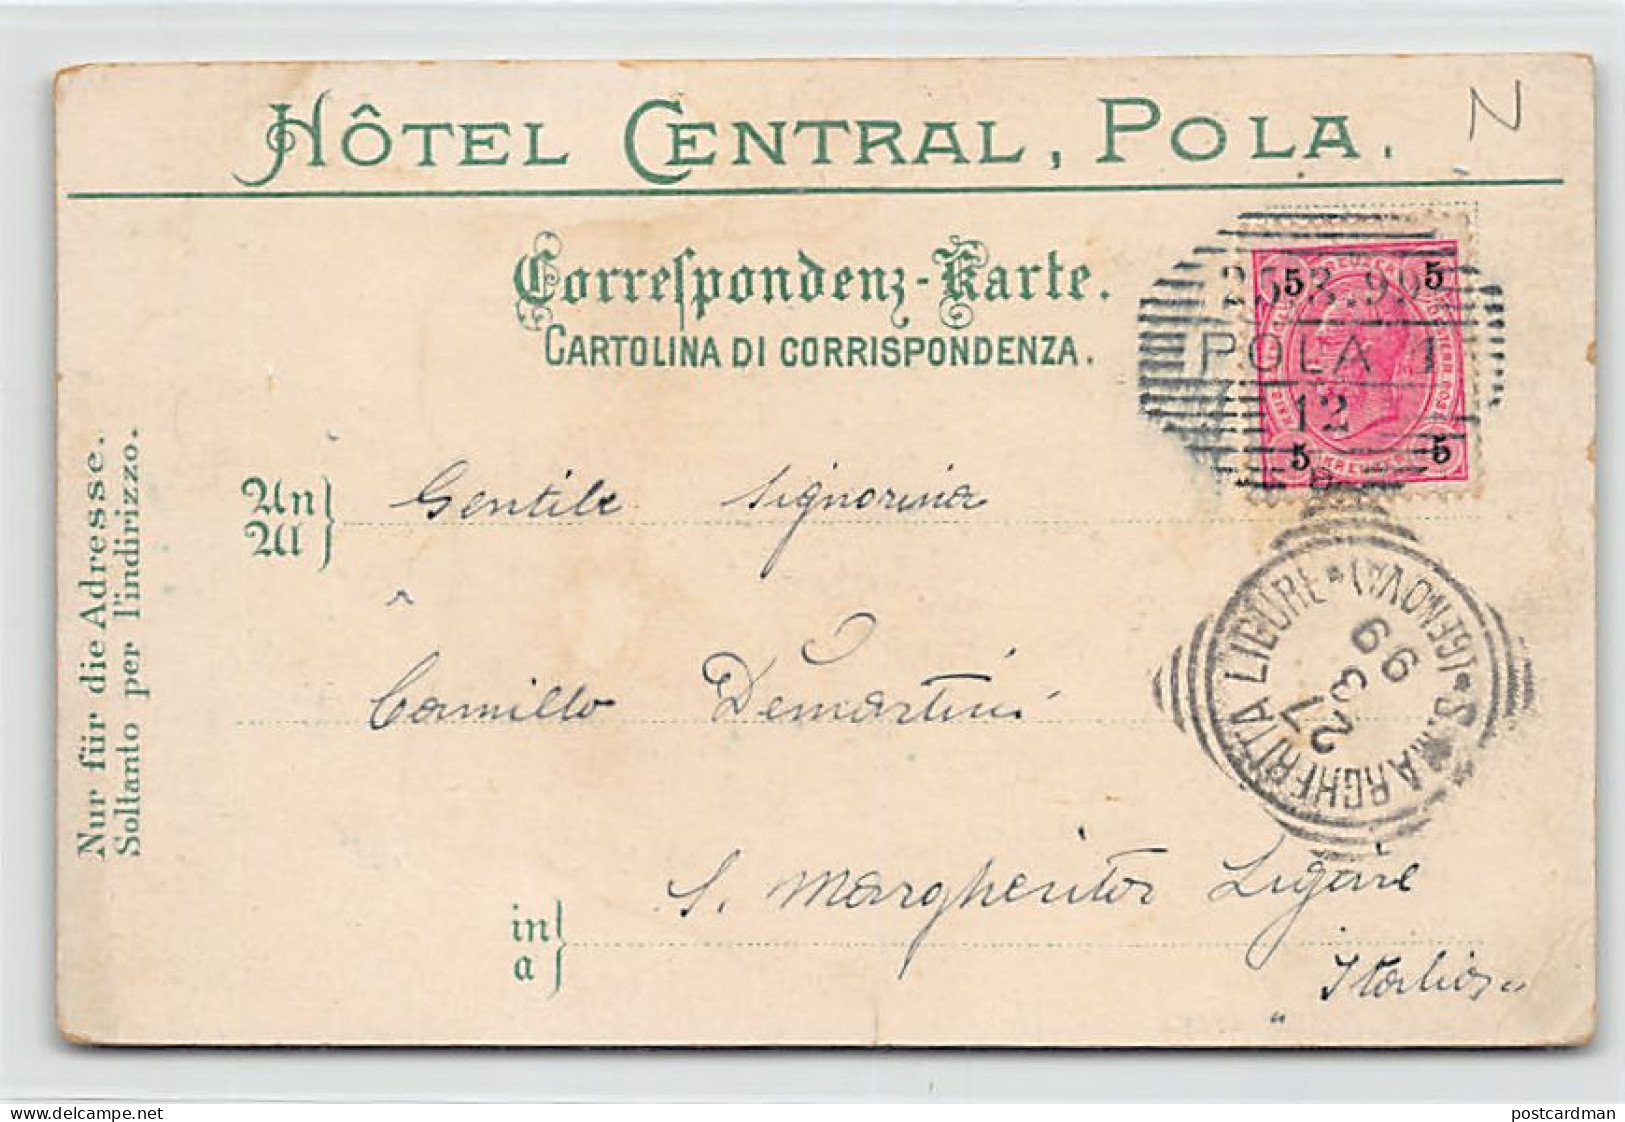 Croatia - POLA - Litho - Hotel Central - Year 1899 - Publ. Giorgio Sternfeld - Croatia